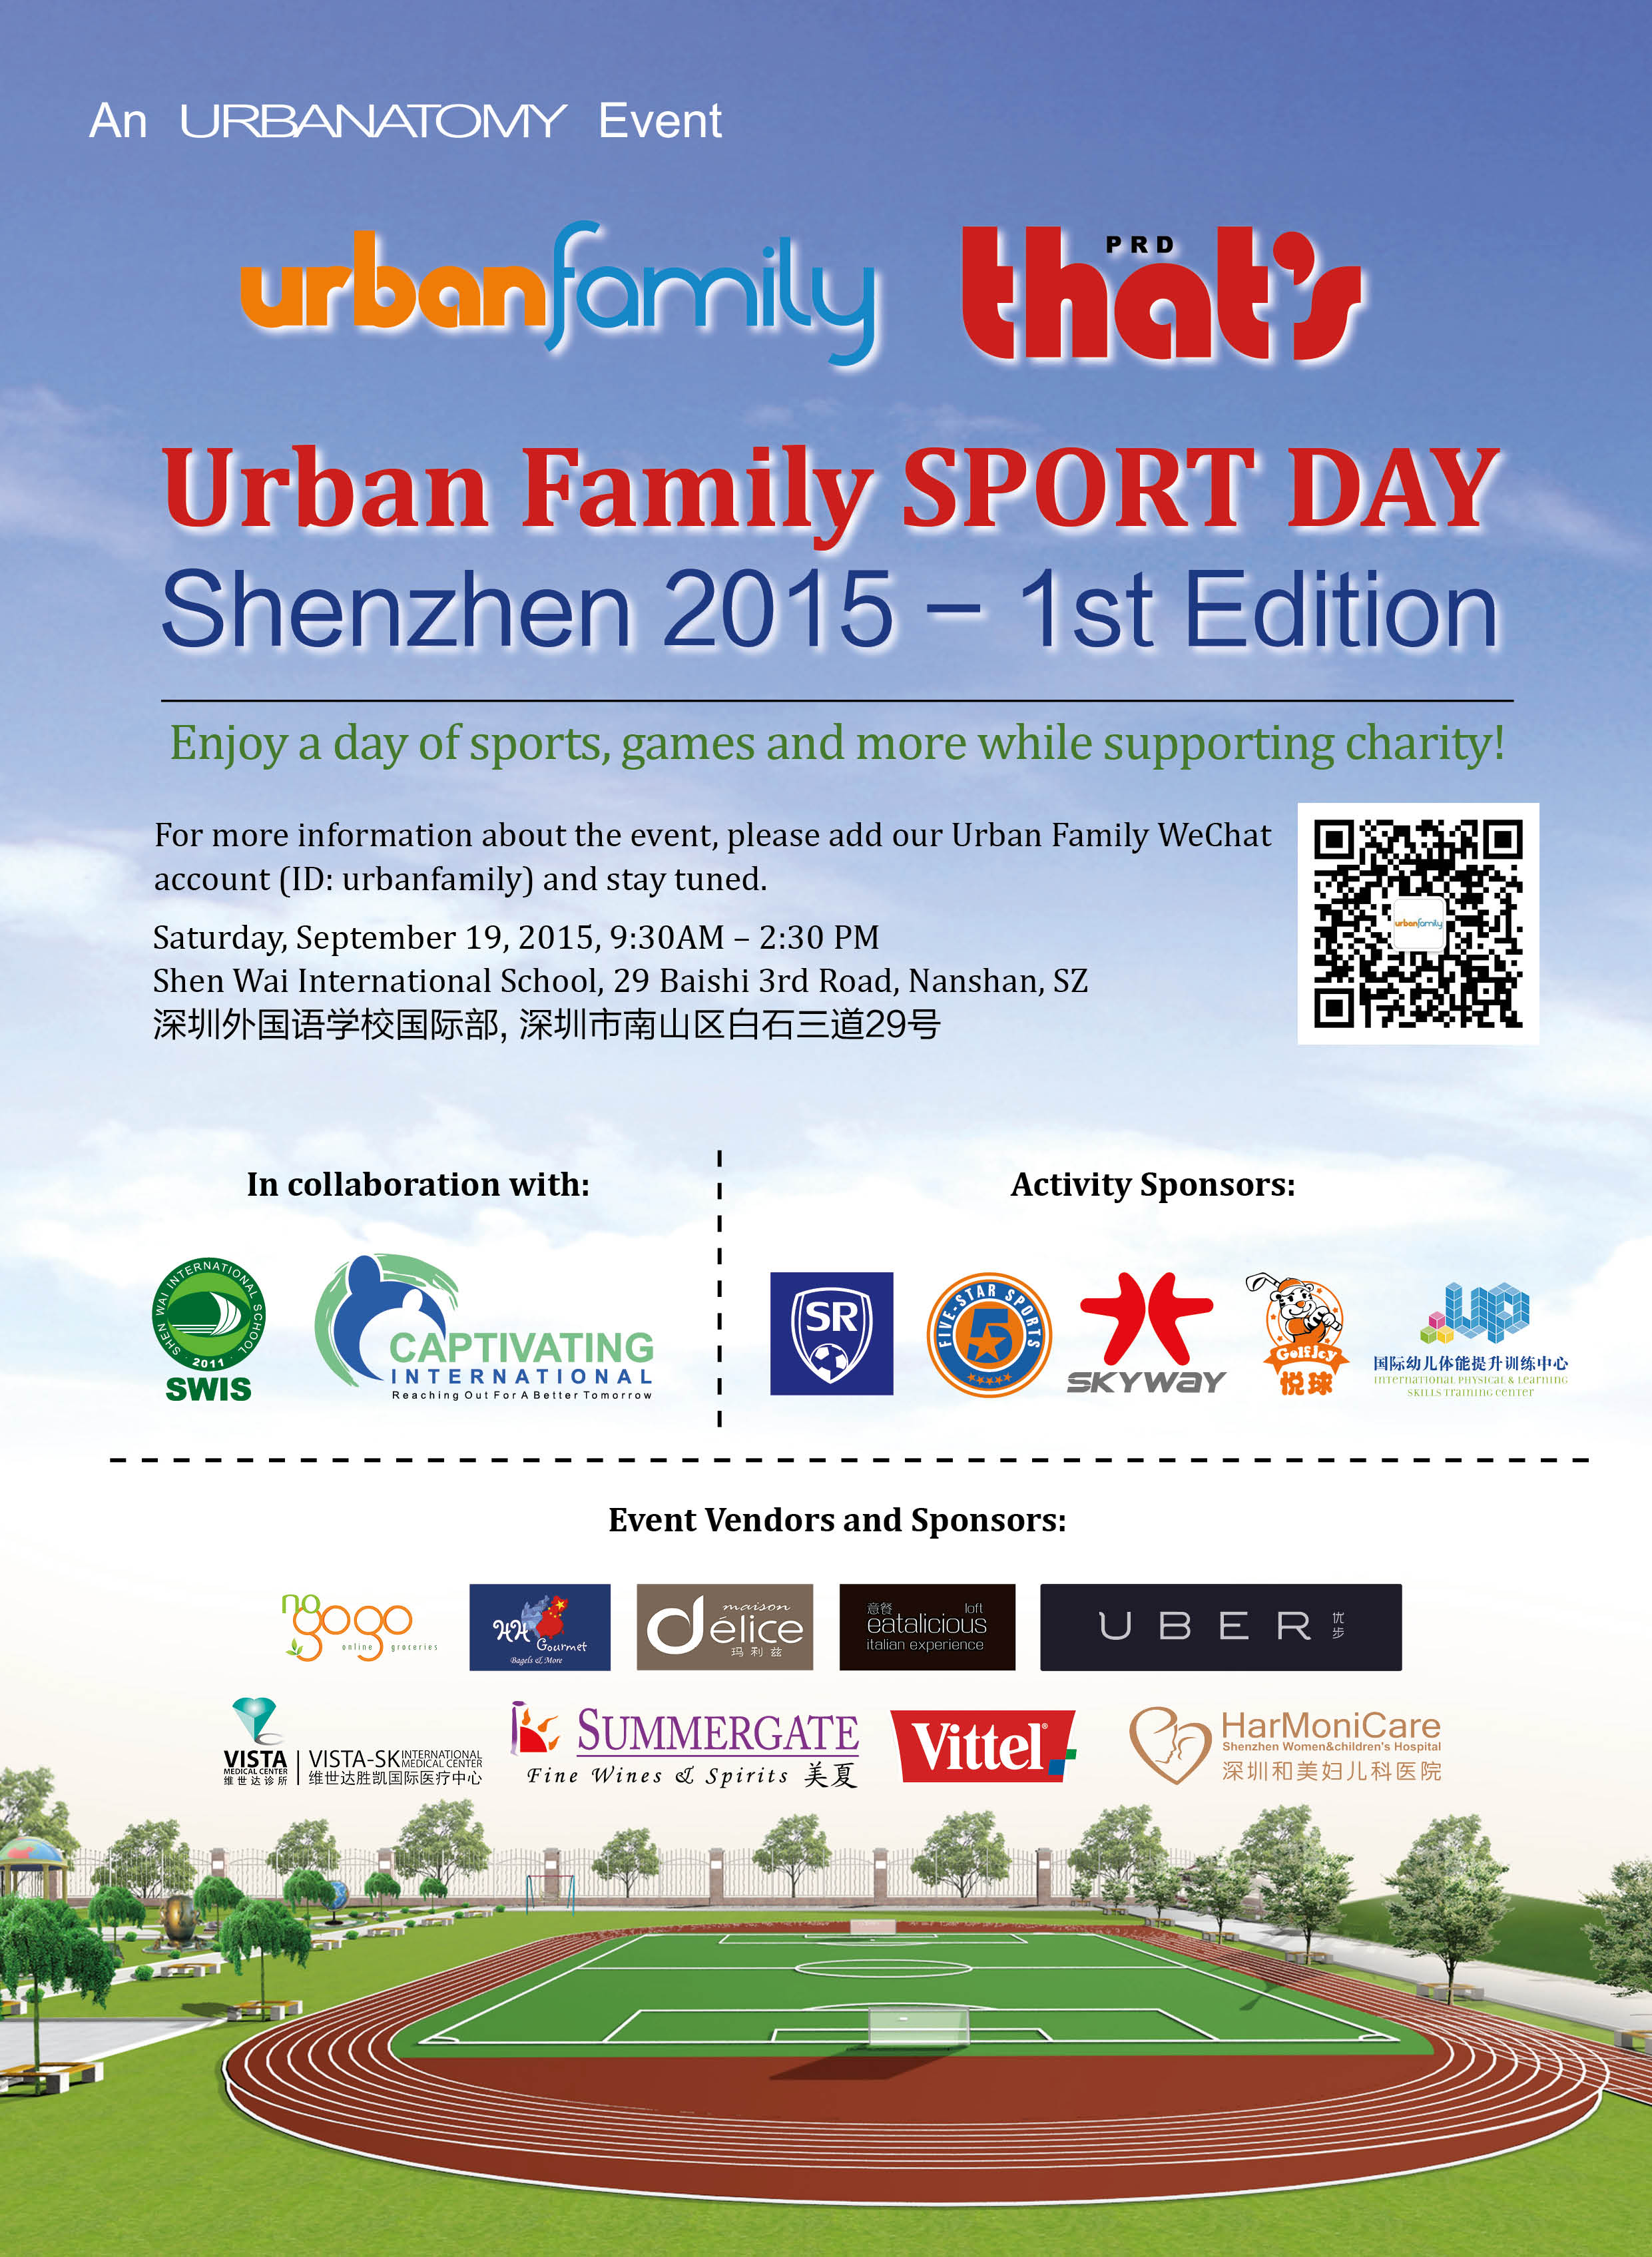 2015 Urban Family Sport Day in Shenzhen